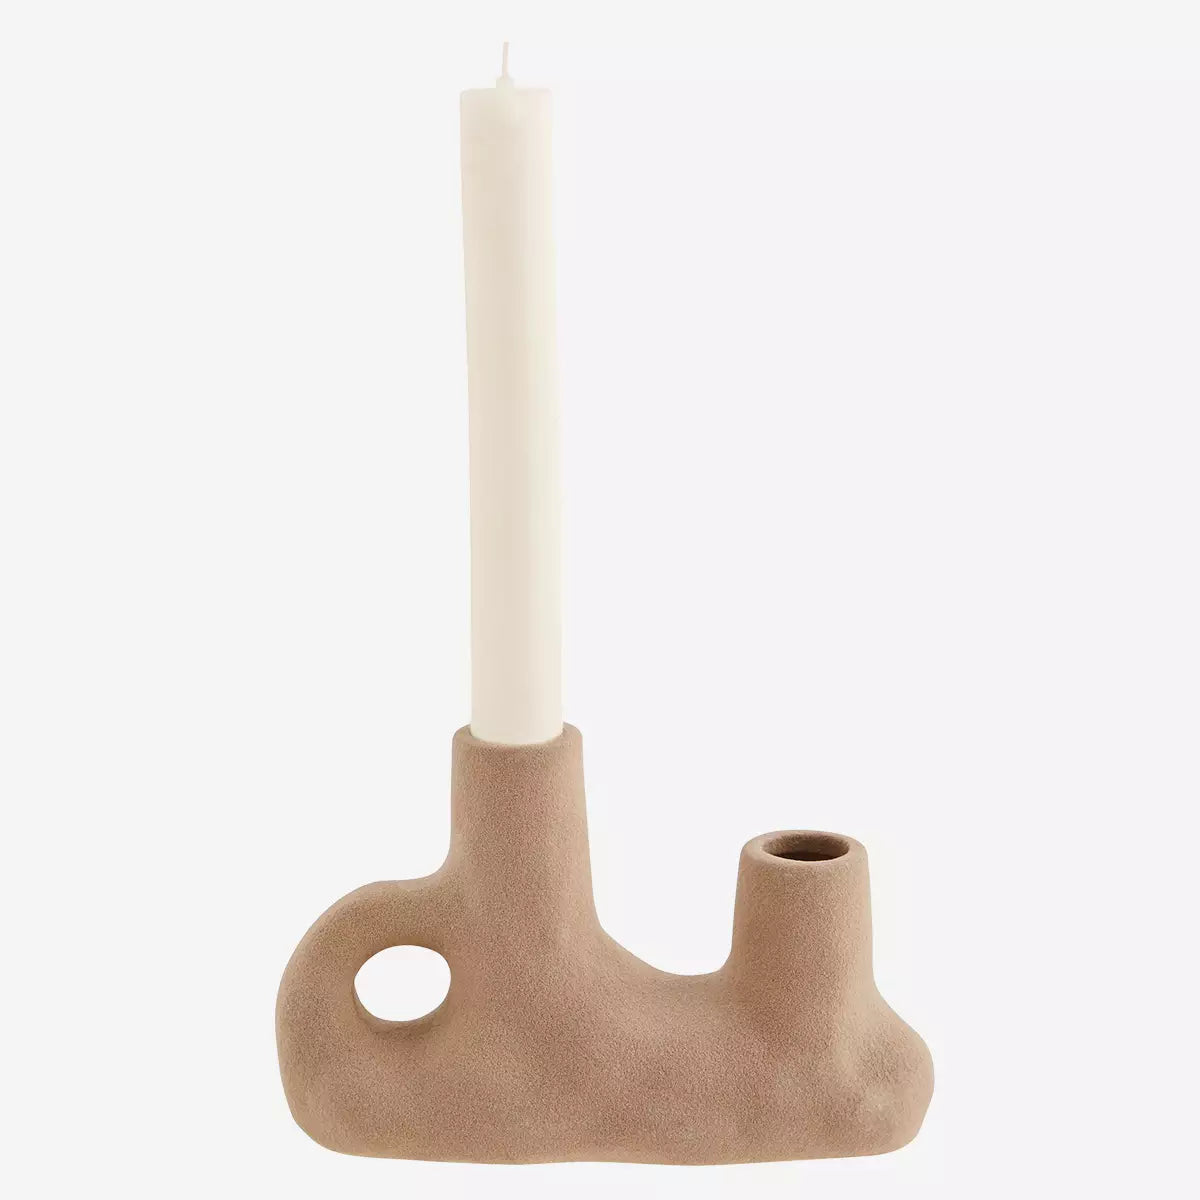 Stoneware Vase / Candle Holder With Double Opening Madam Stoltz